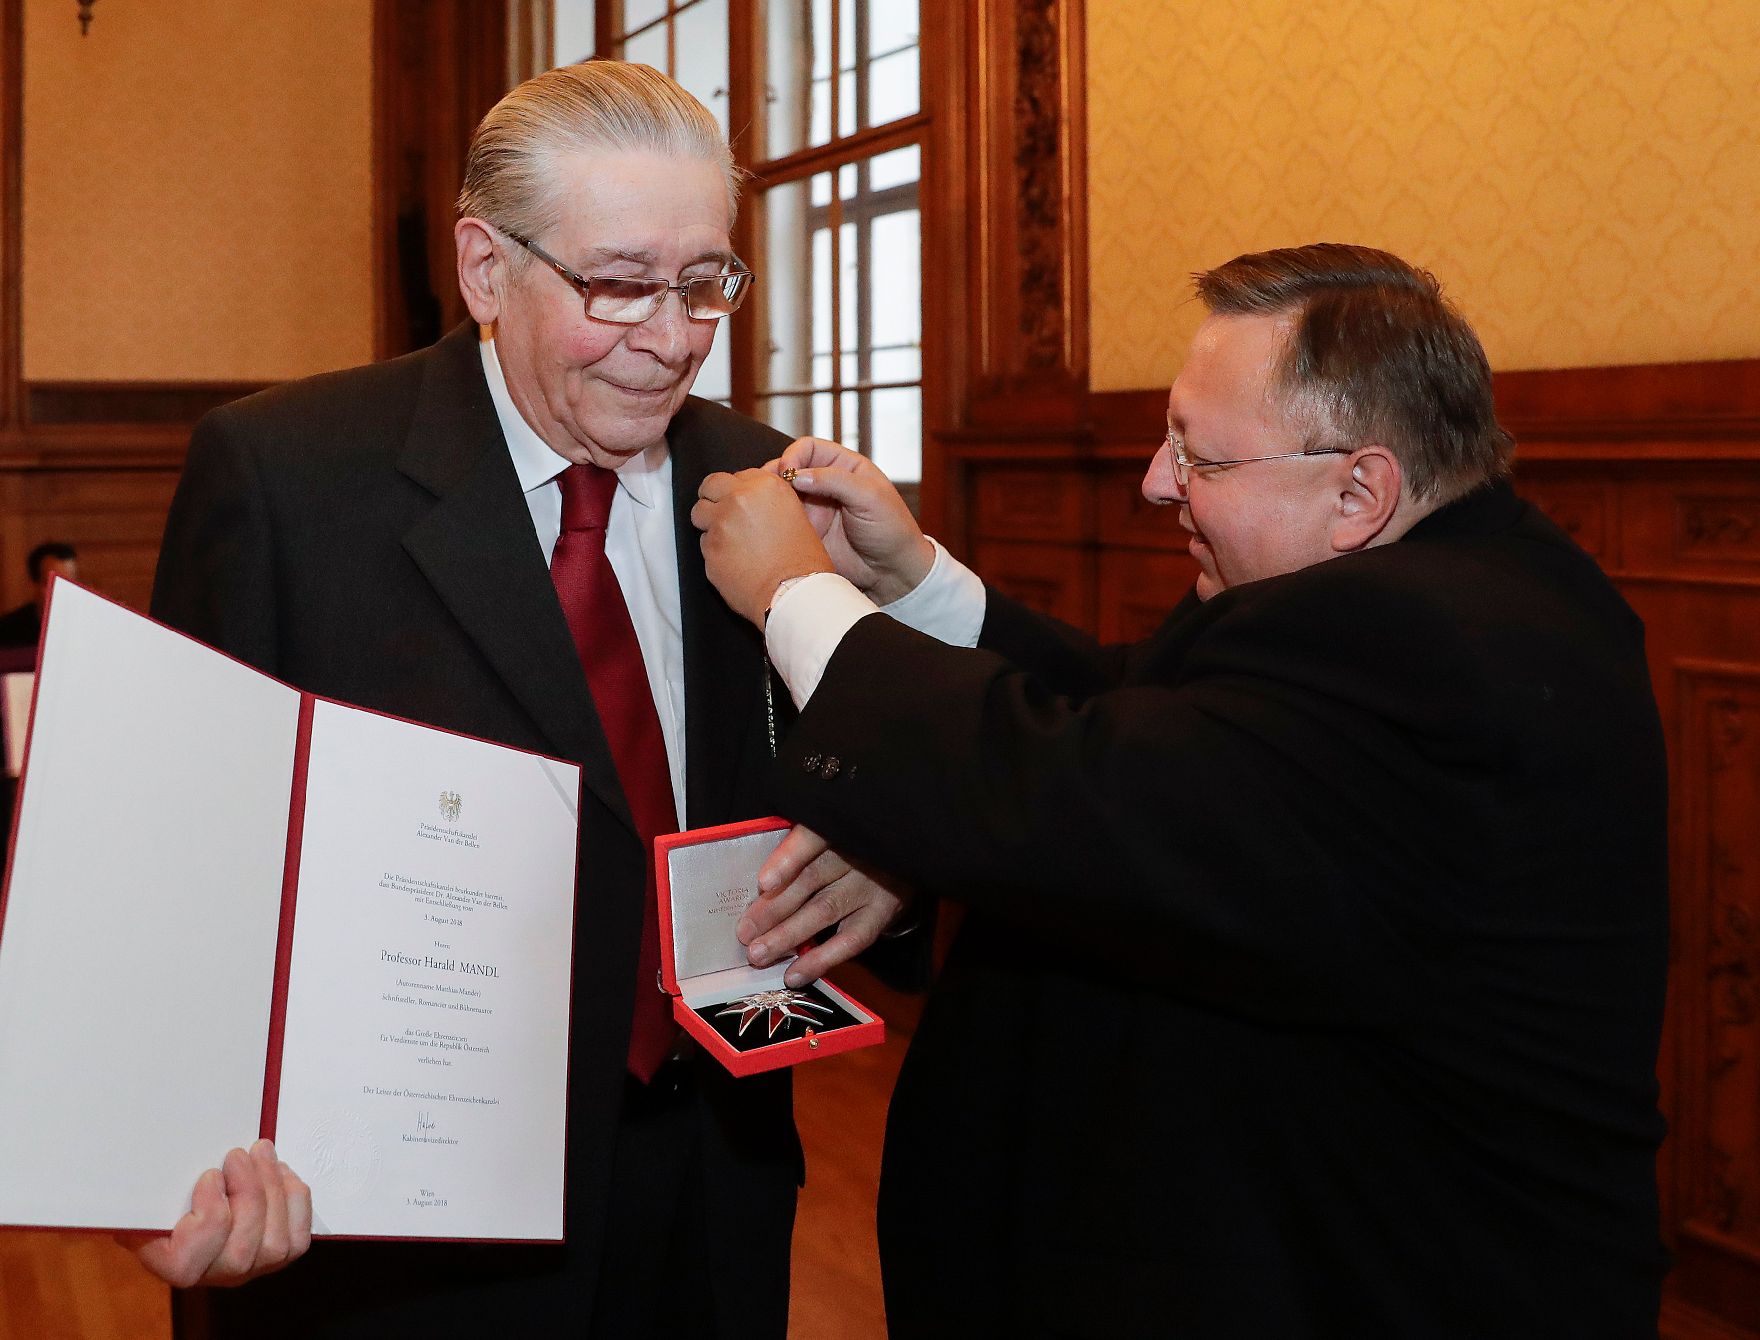 Am 26. November 2018 wurde das Große Ehrenzeichen für Verdienste um die Republik Österreich an Harald Mandl (l.) (Autorenname Matthias Mander) verliehen. Im Bild mit Reinhold Hohengartner (r.).